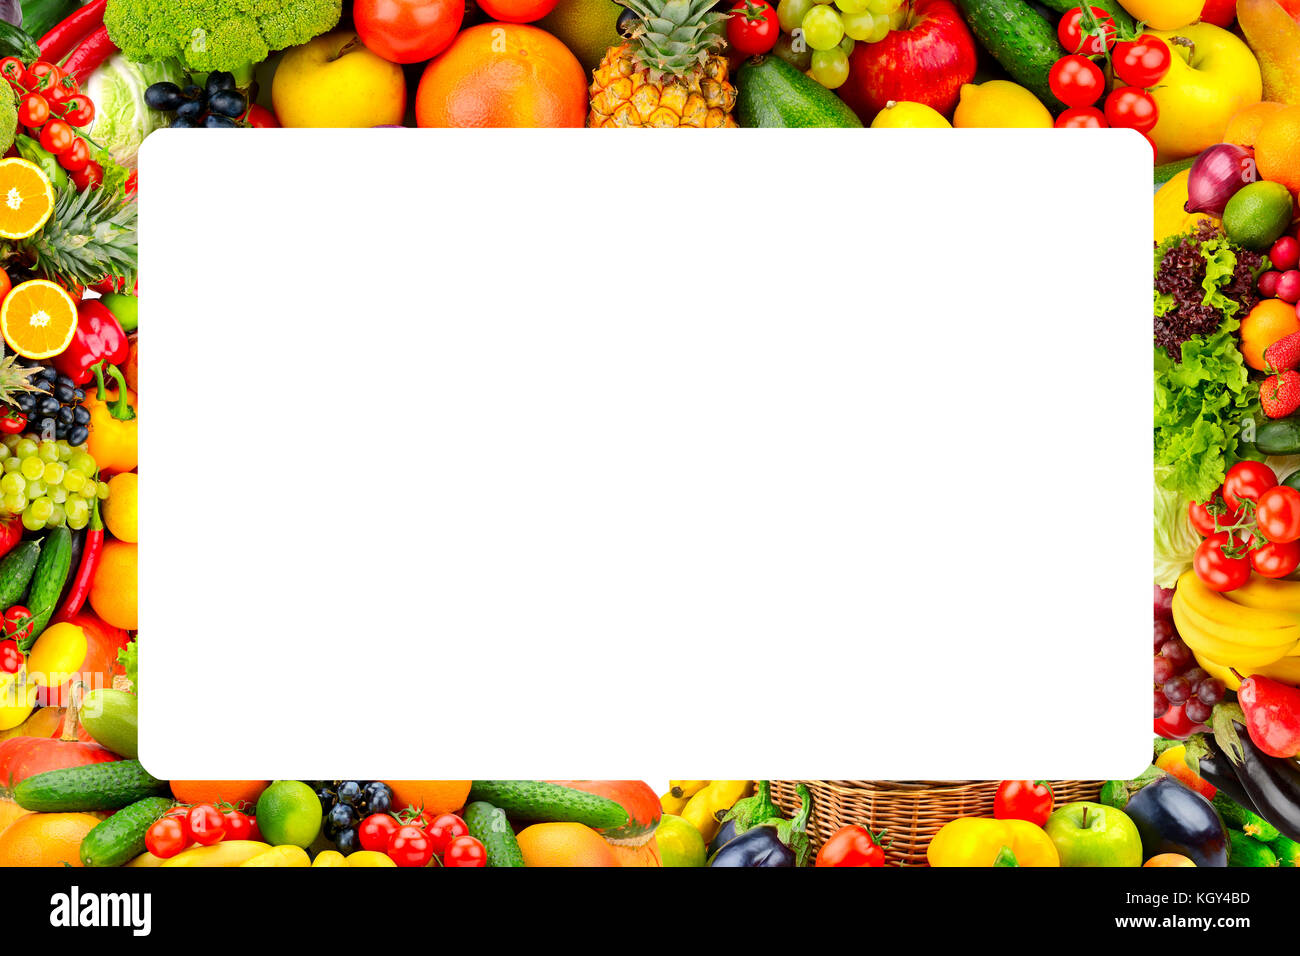 Image de fruits et légumes frais. Il y a de la place pour votre texte. Banque D'Images